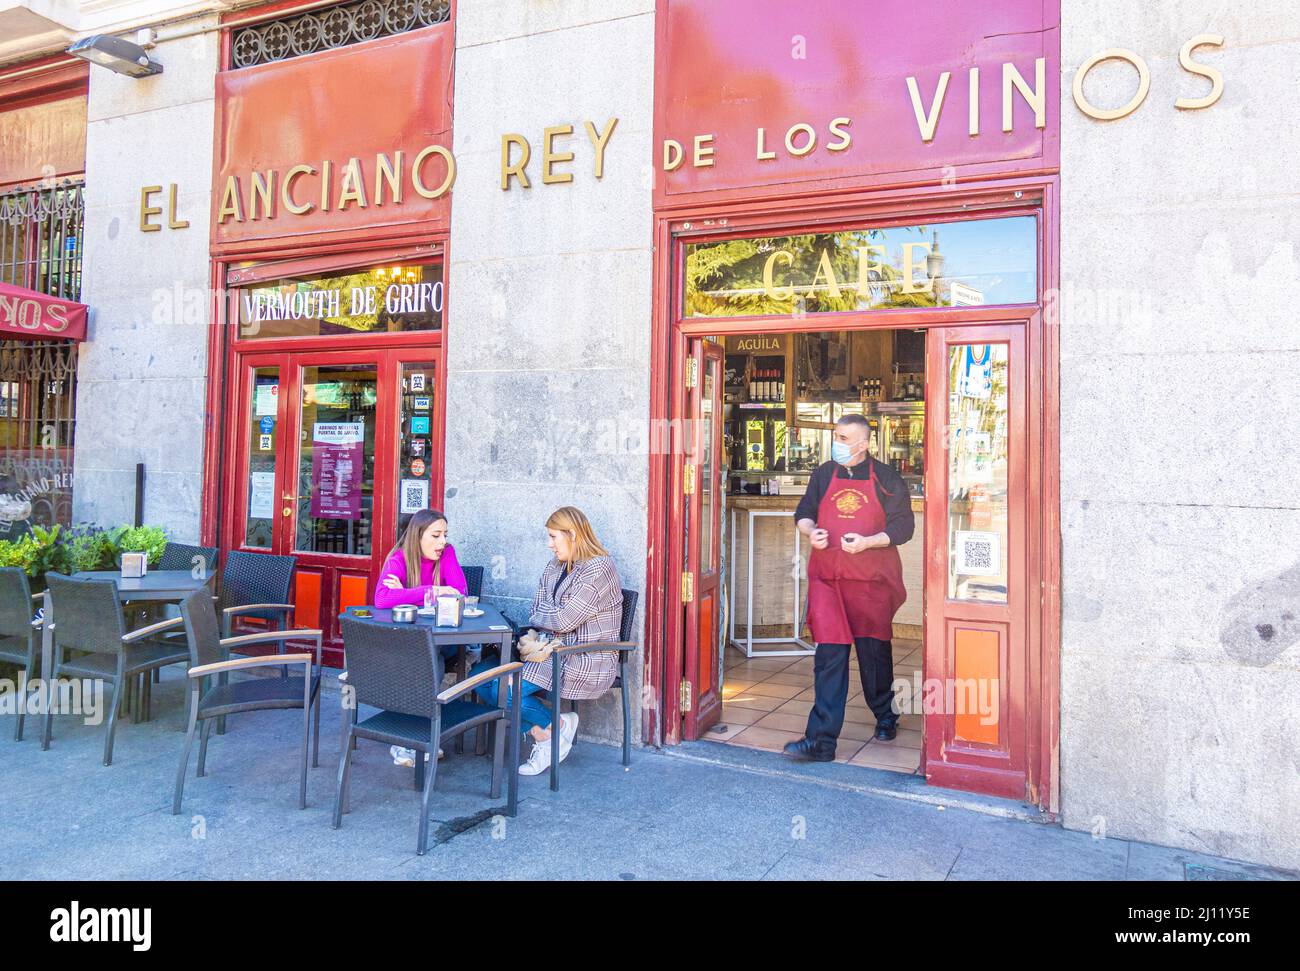 El Anciano Rey de los Vinos taberna taverne restaurant in Centro, central Madrid, Spain Stock Photo